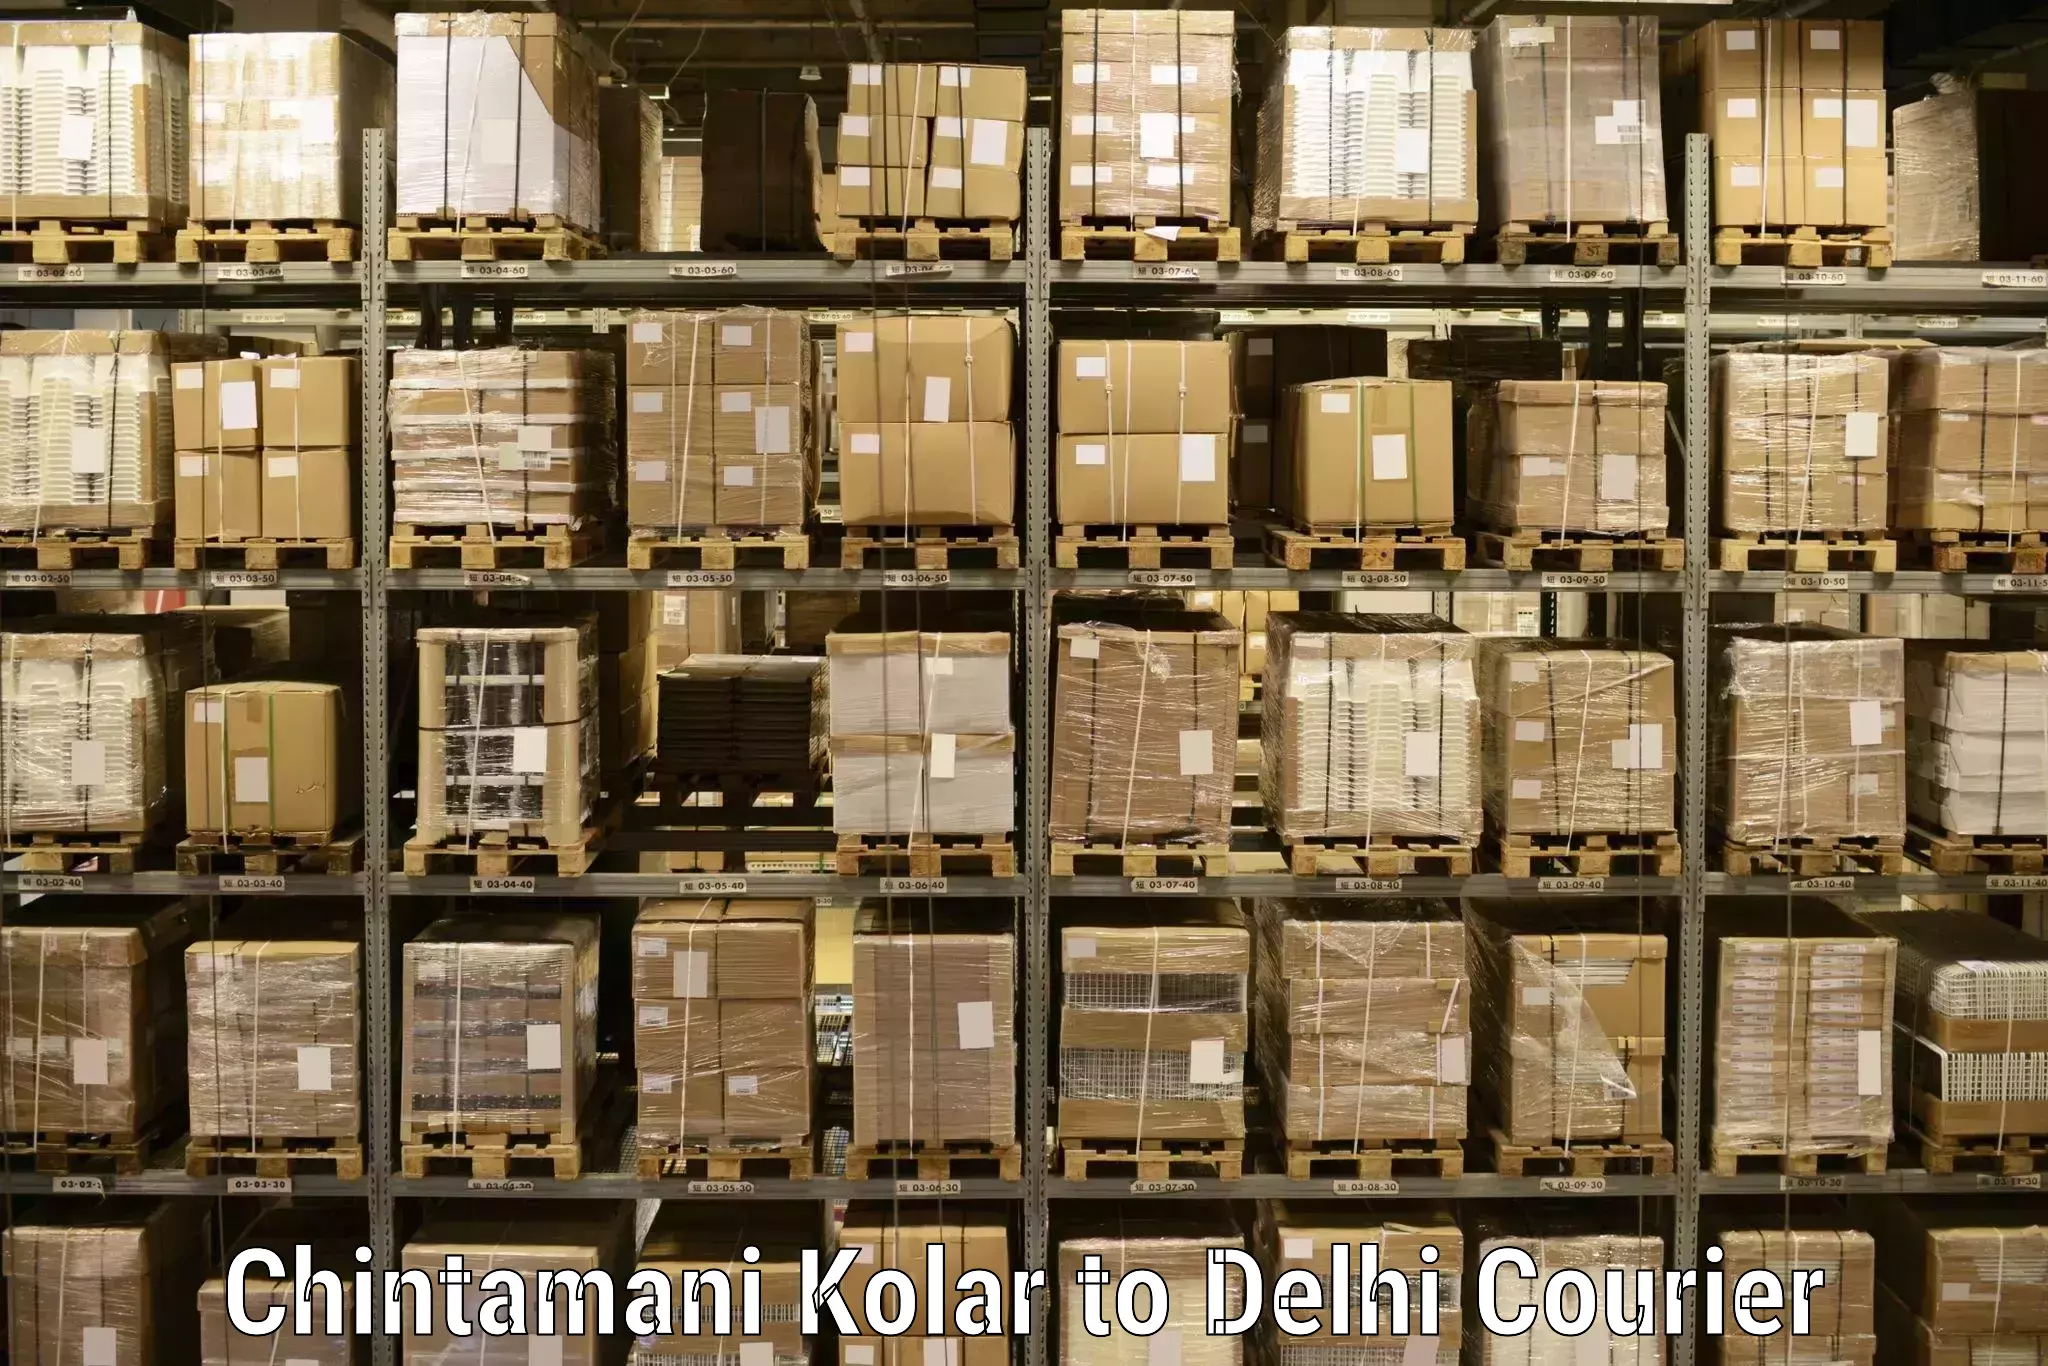 Multi-service courier options Chintamani Kolar to NCR